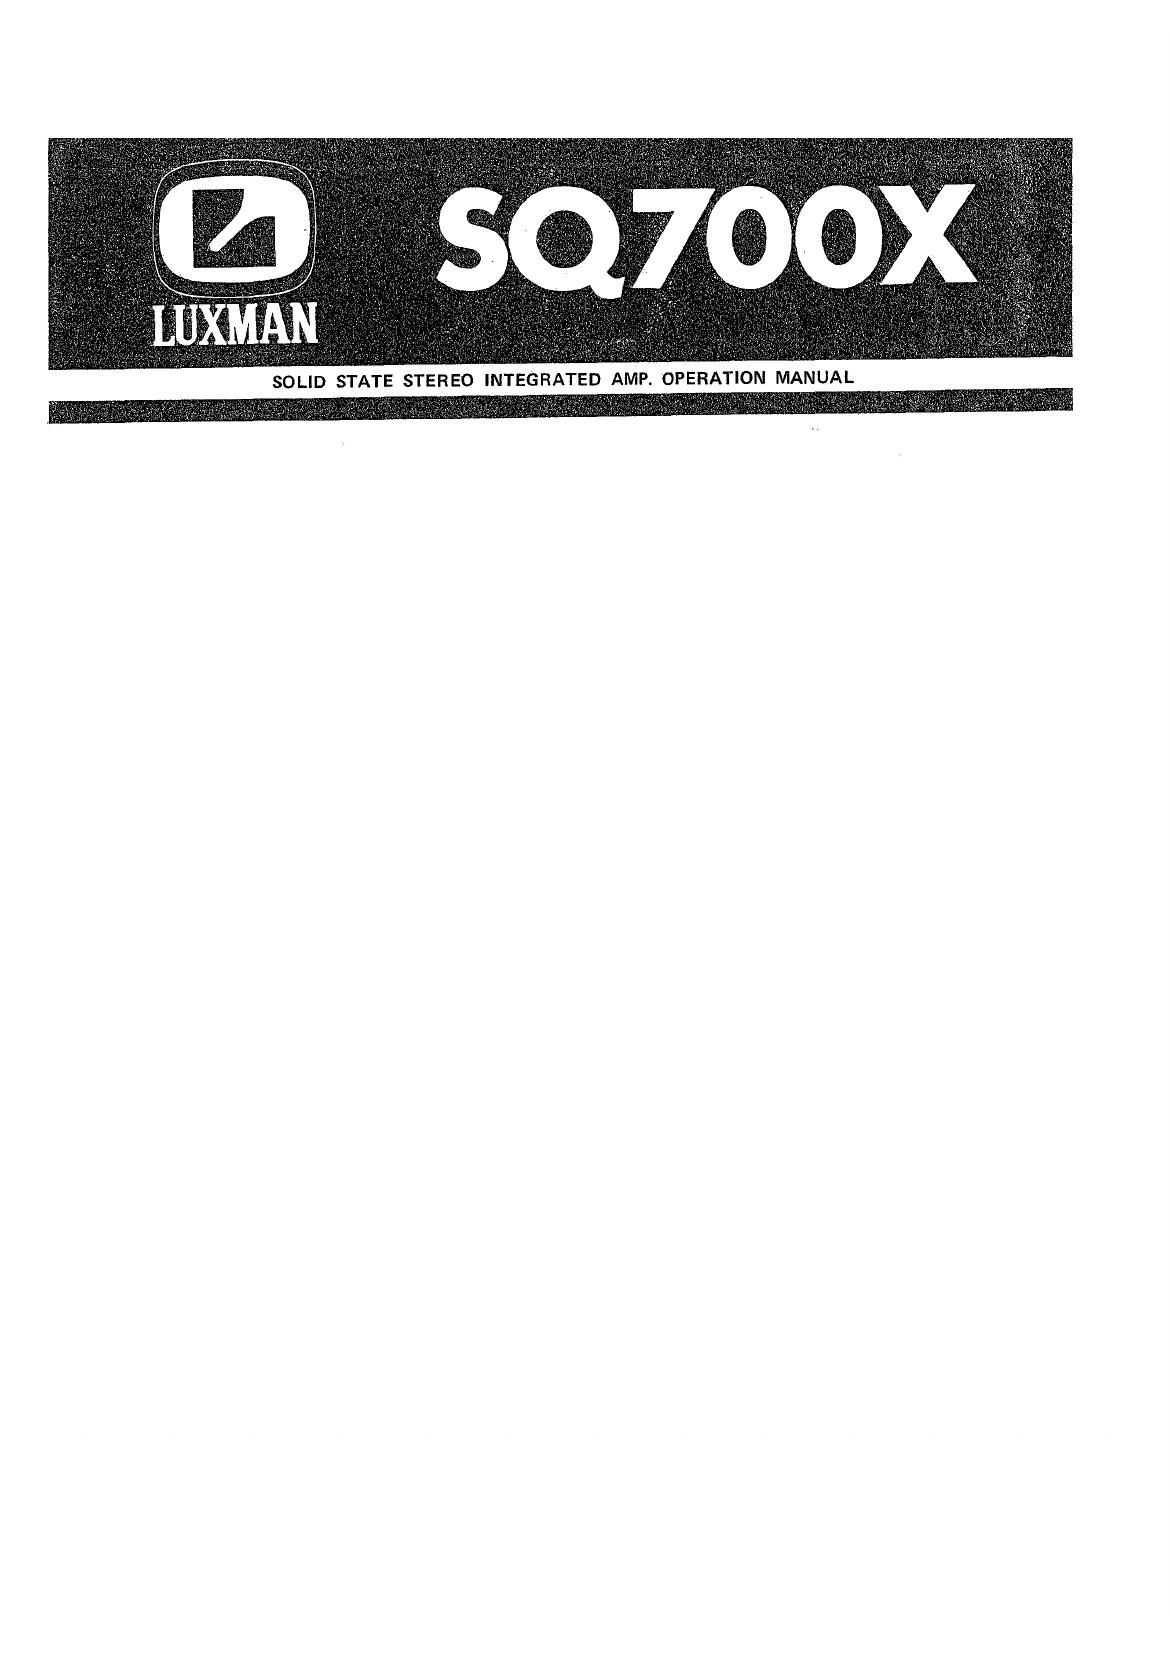 Luxman SQ 700 X Service Manual